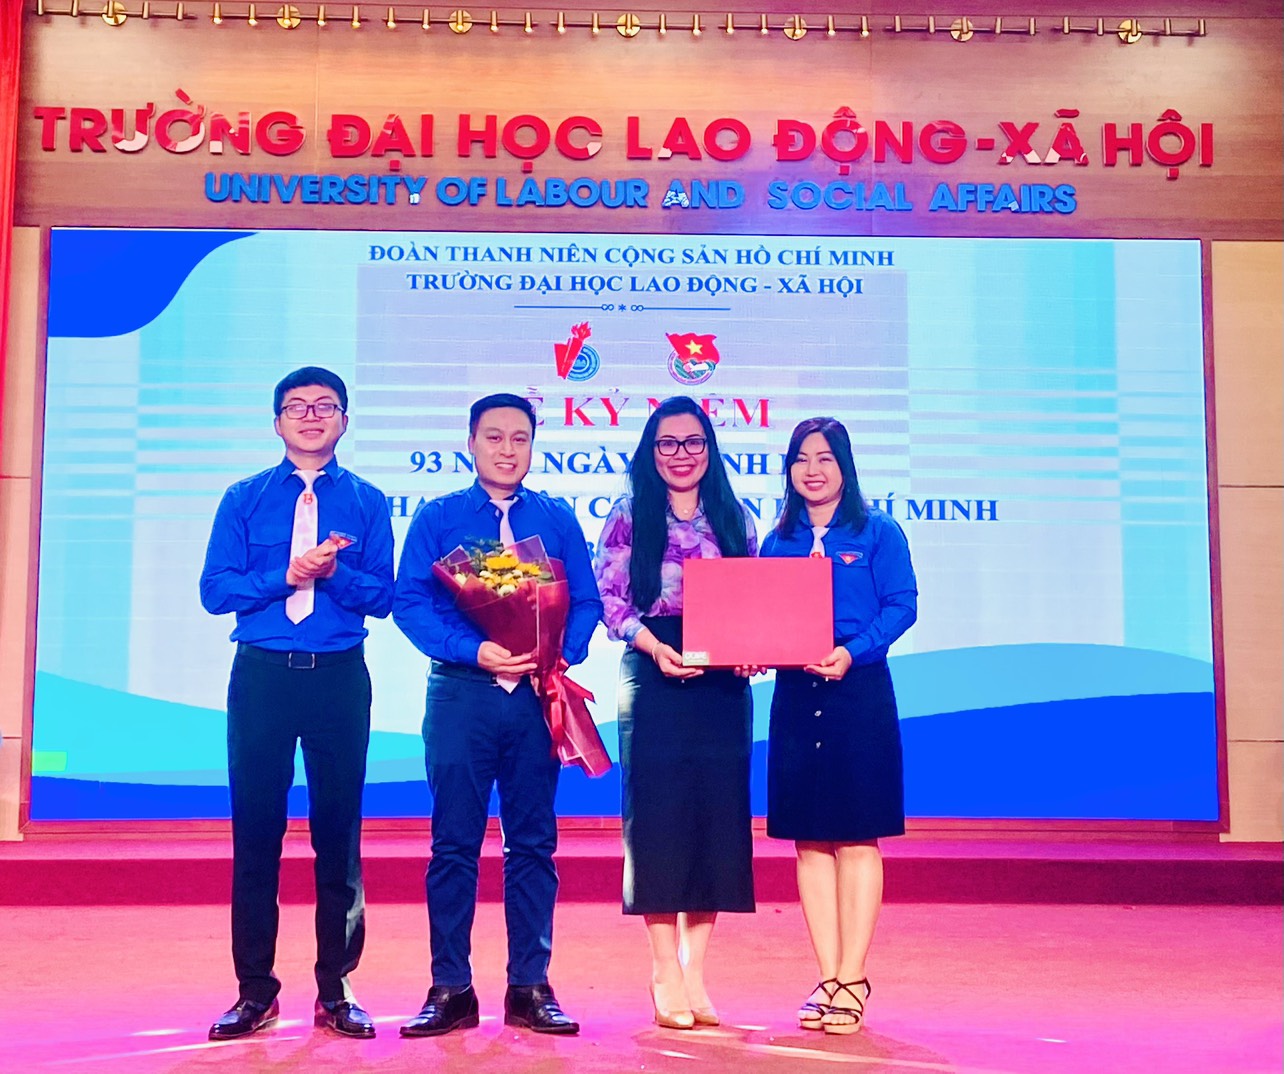 Nha khoa O'Care tham dự lễ kỷ niệm 93 năm thành lập Đoàn TNCS Hồ Chí Minh của trường ĐH Lao động - Xã hội